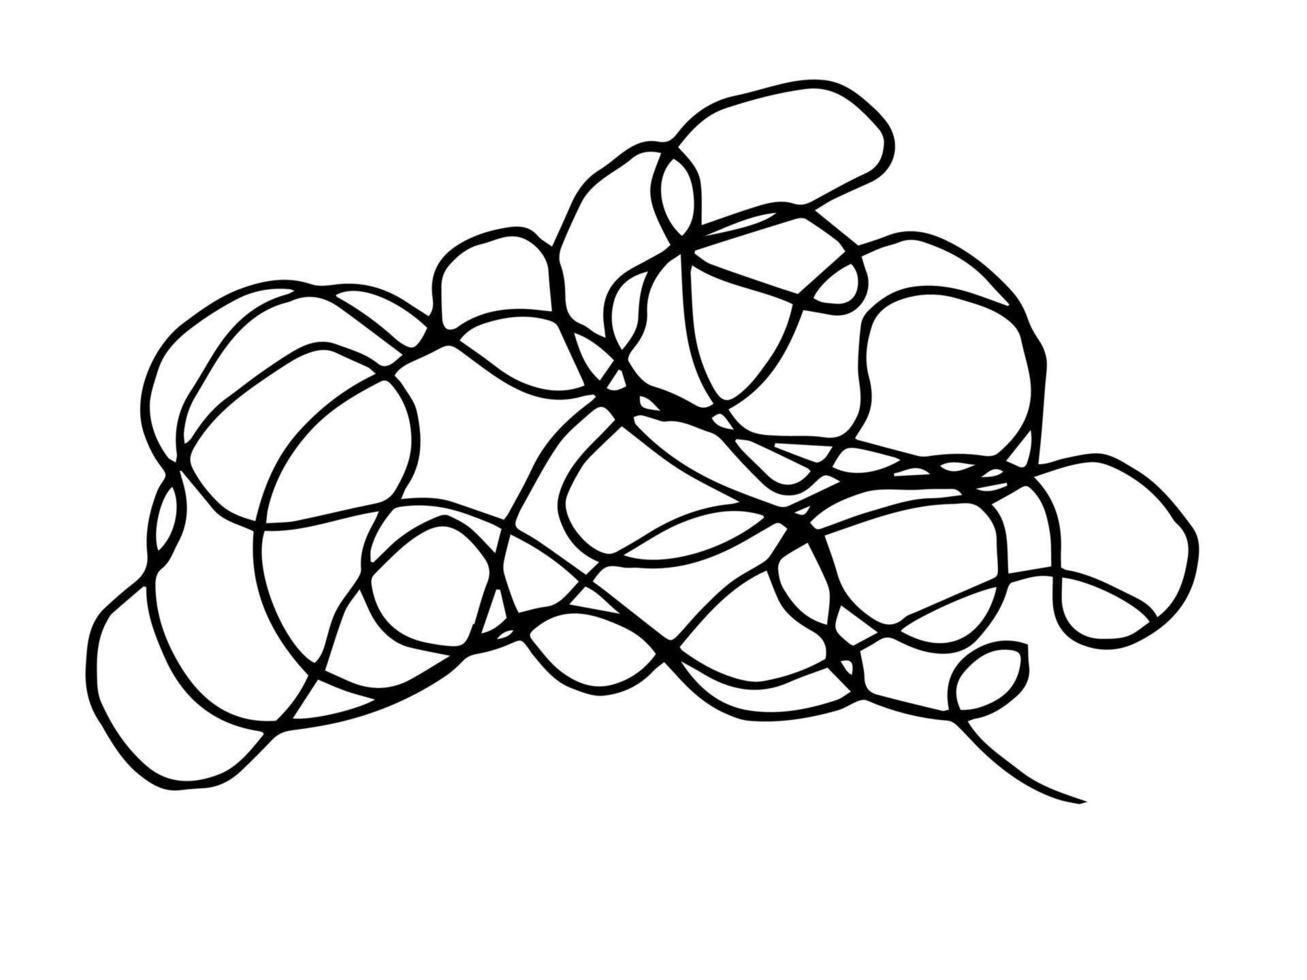 scarabocchio aggrovigliato astratto di doodle disegnato a mano. linee caotiche casuali vettoriali. vettore